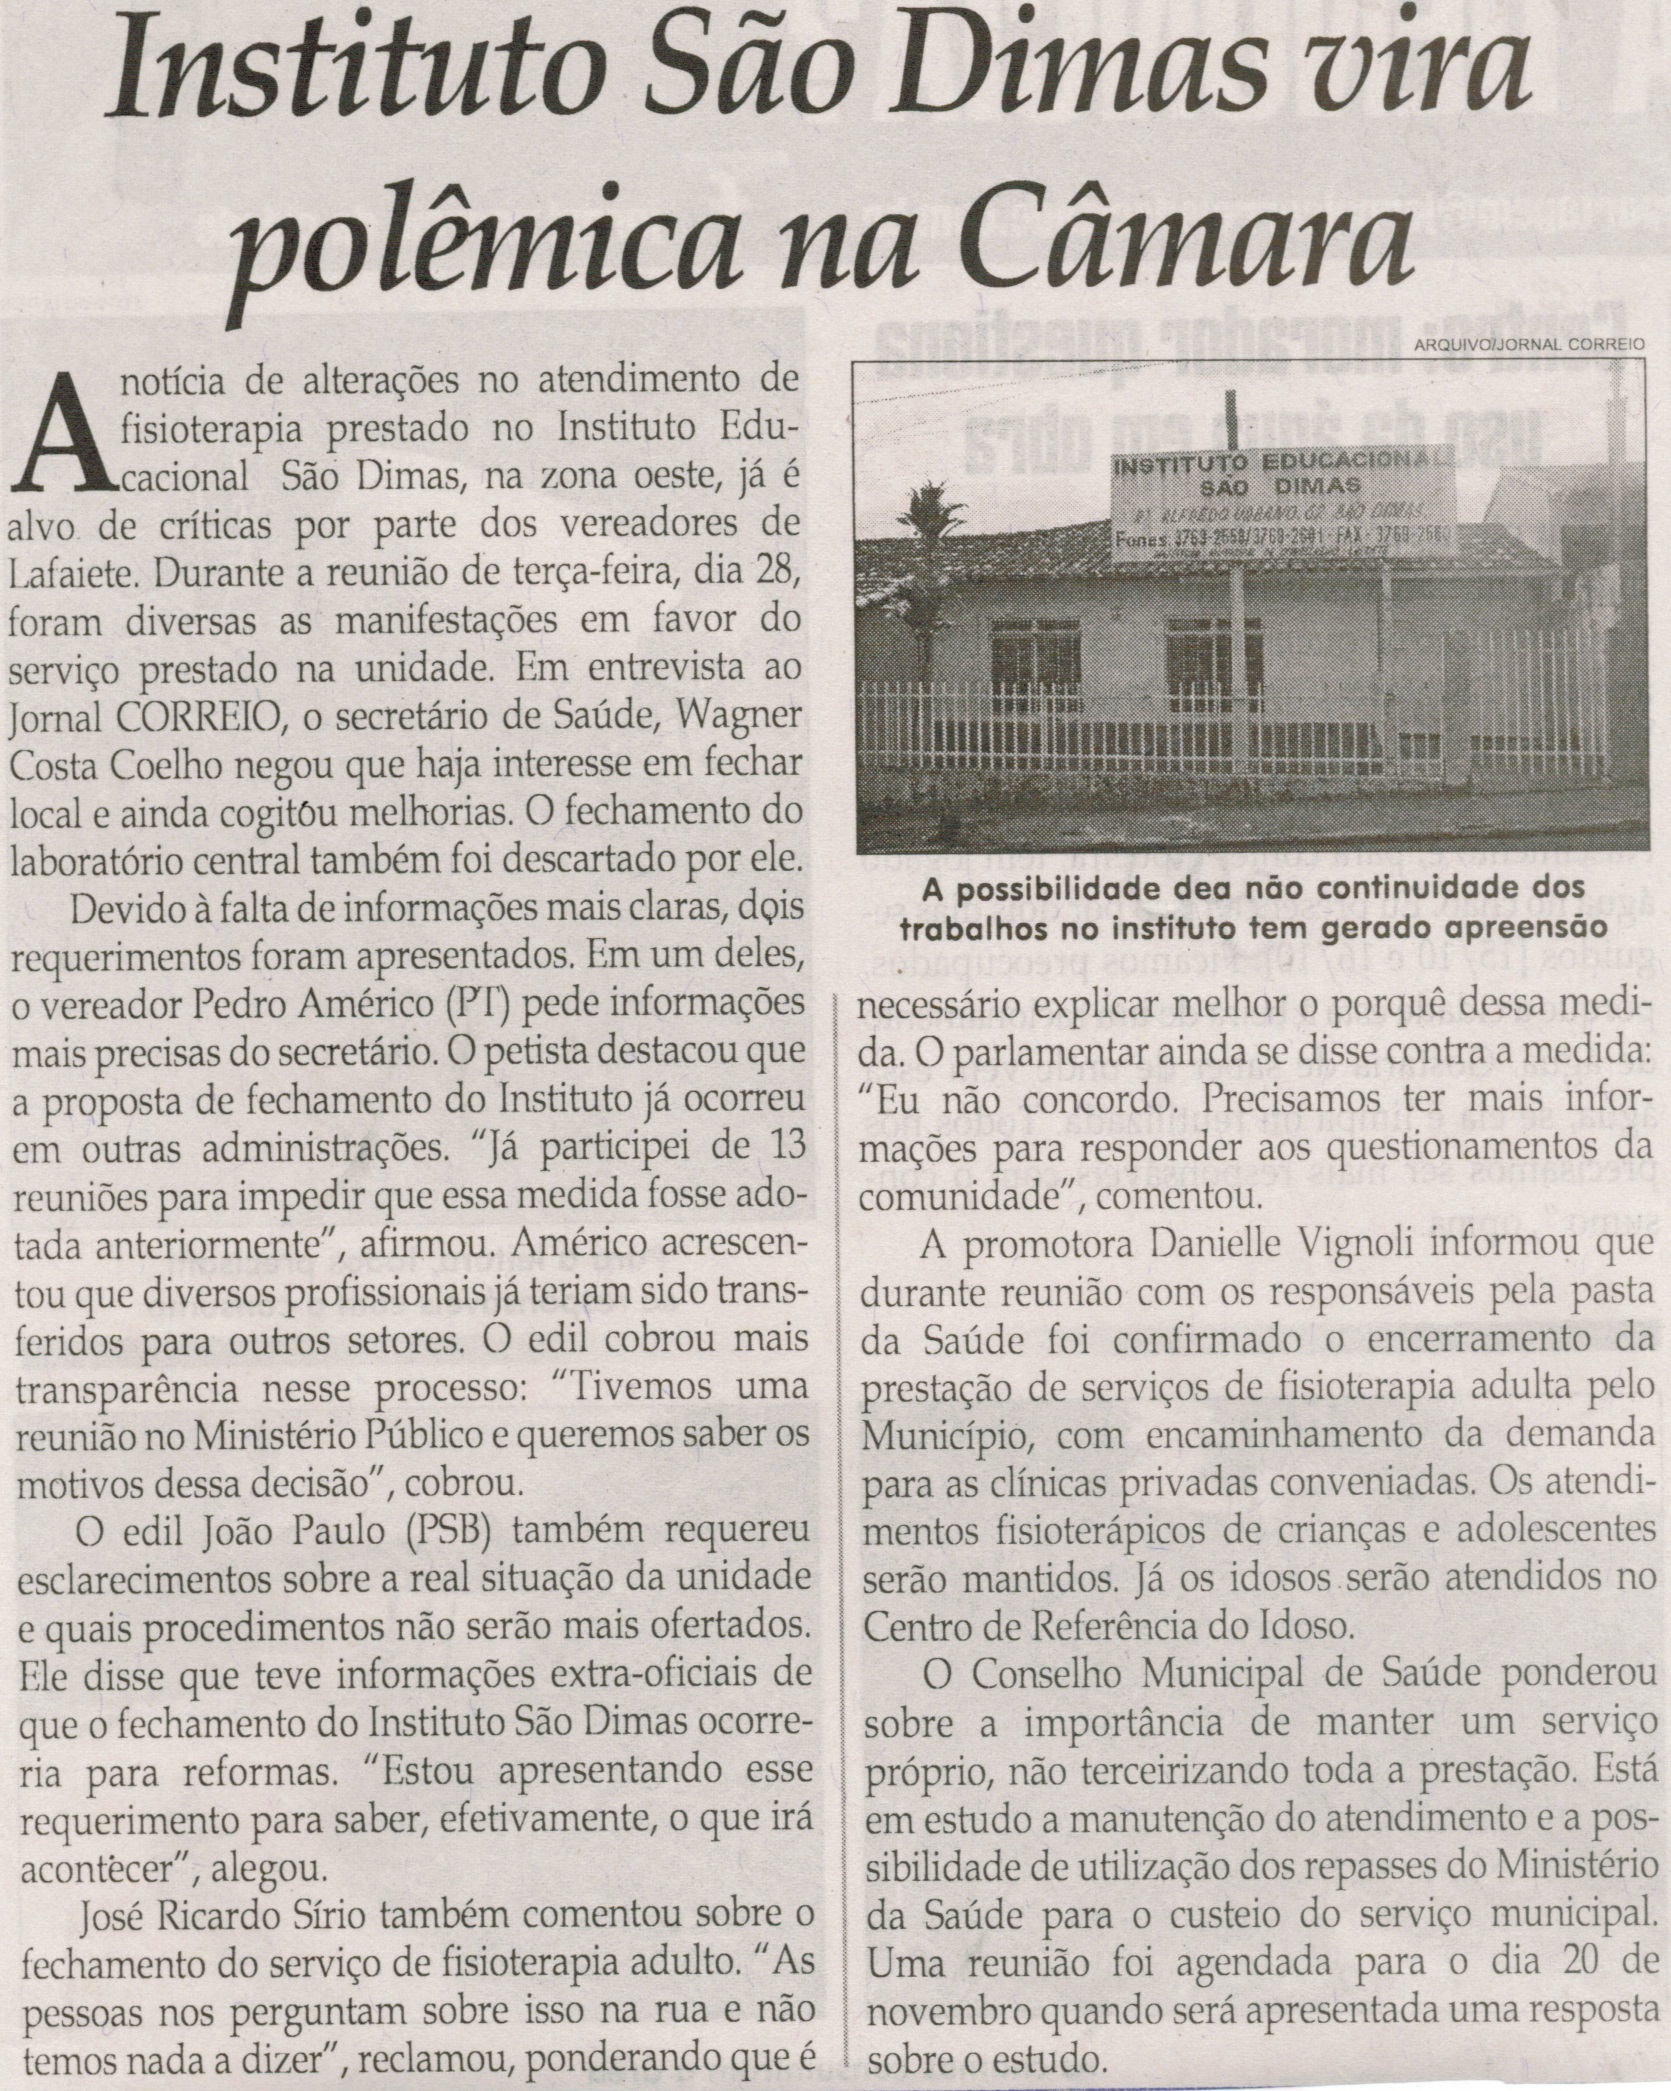 Instituto São Dimas vira polêmica na Câmara. Jornal Correio da Cidade, Conselheiro Lafaiete,  07 nov. 2014, p. 13.